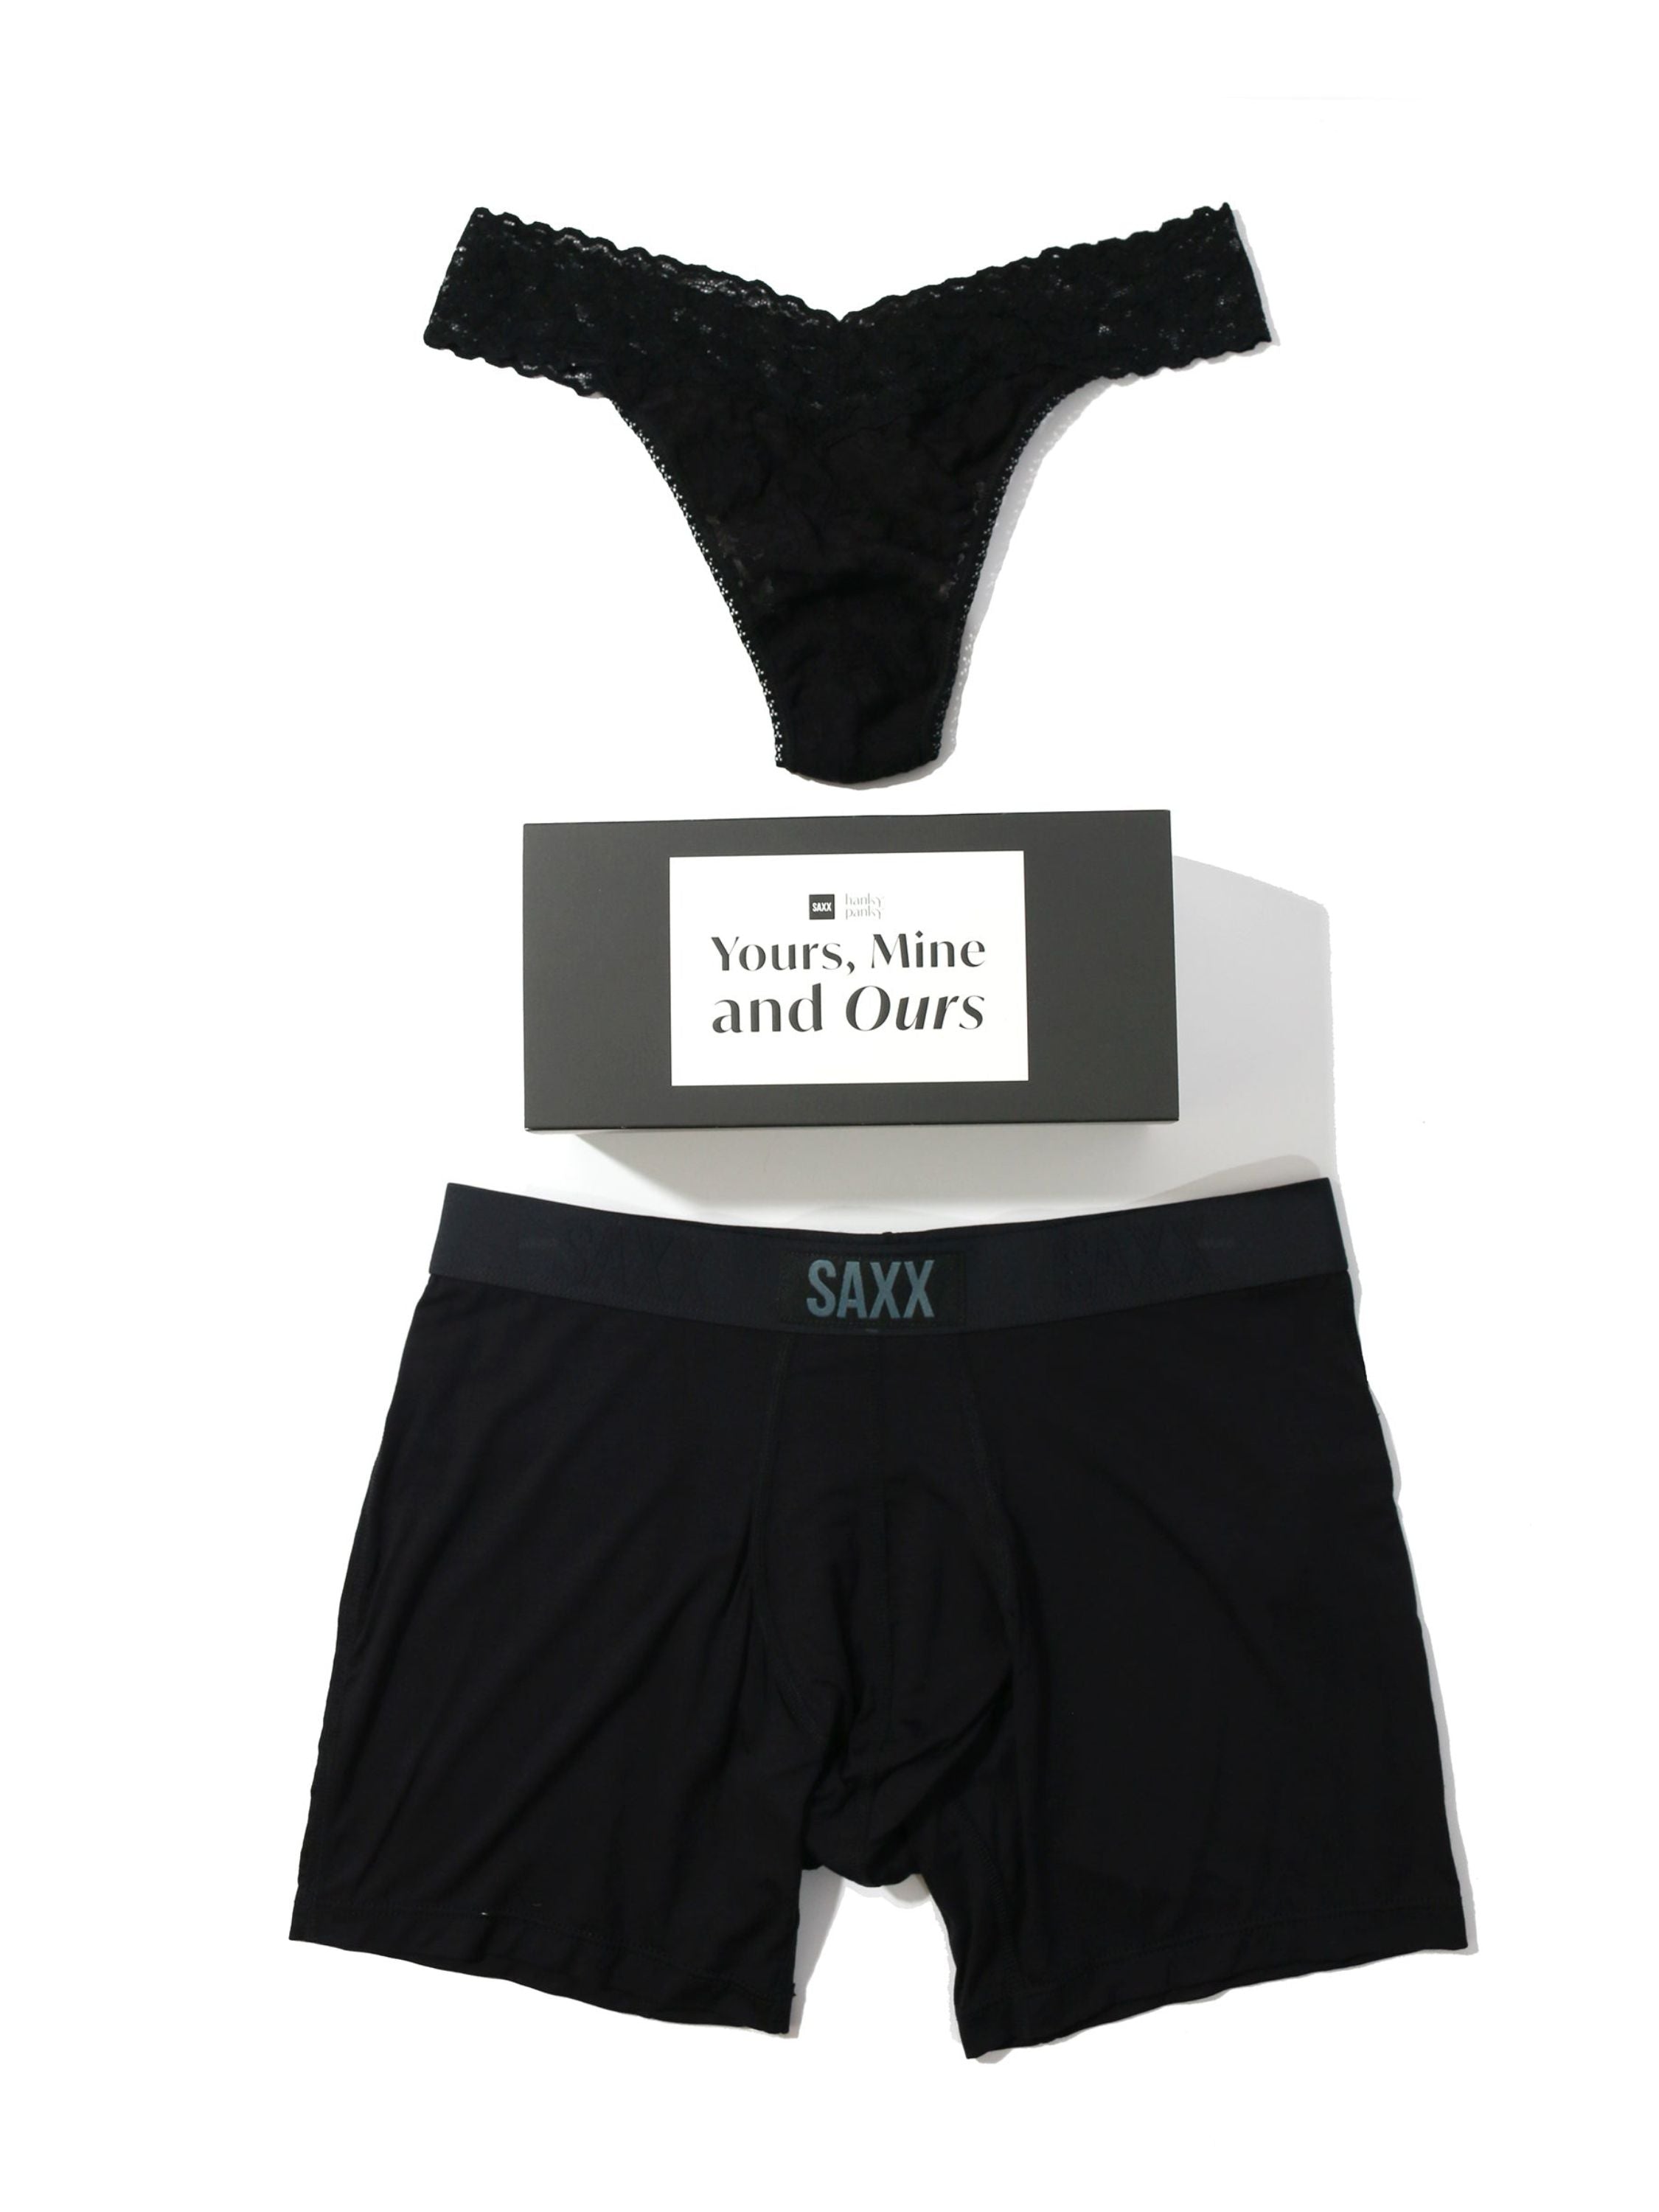 Saxx Underwear, Grey Holiday Empire, Mens Underwear